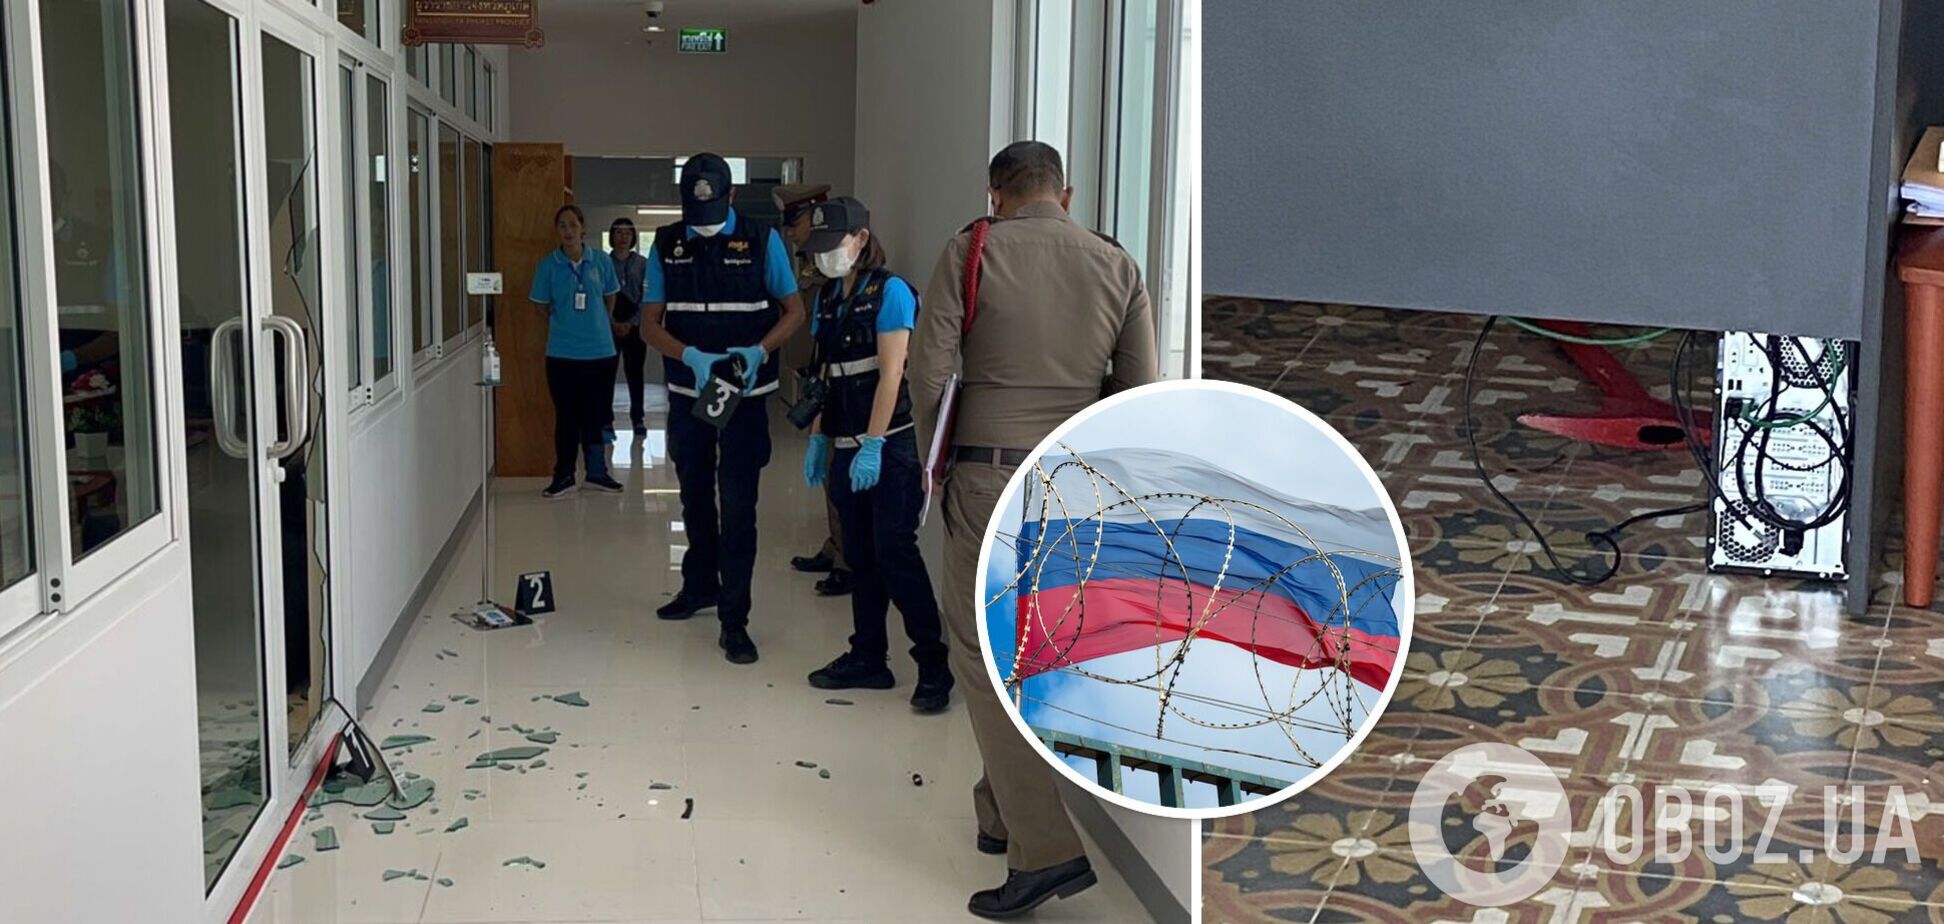 Російський турист із сокирою влаштував дебош в адміністрації Пхукета: його відправили в психлікарню. Фото